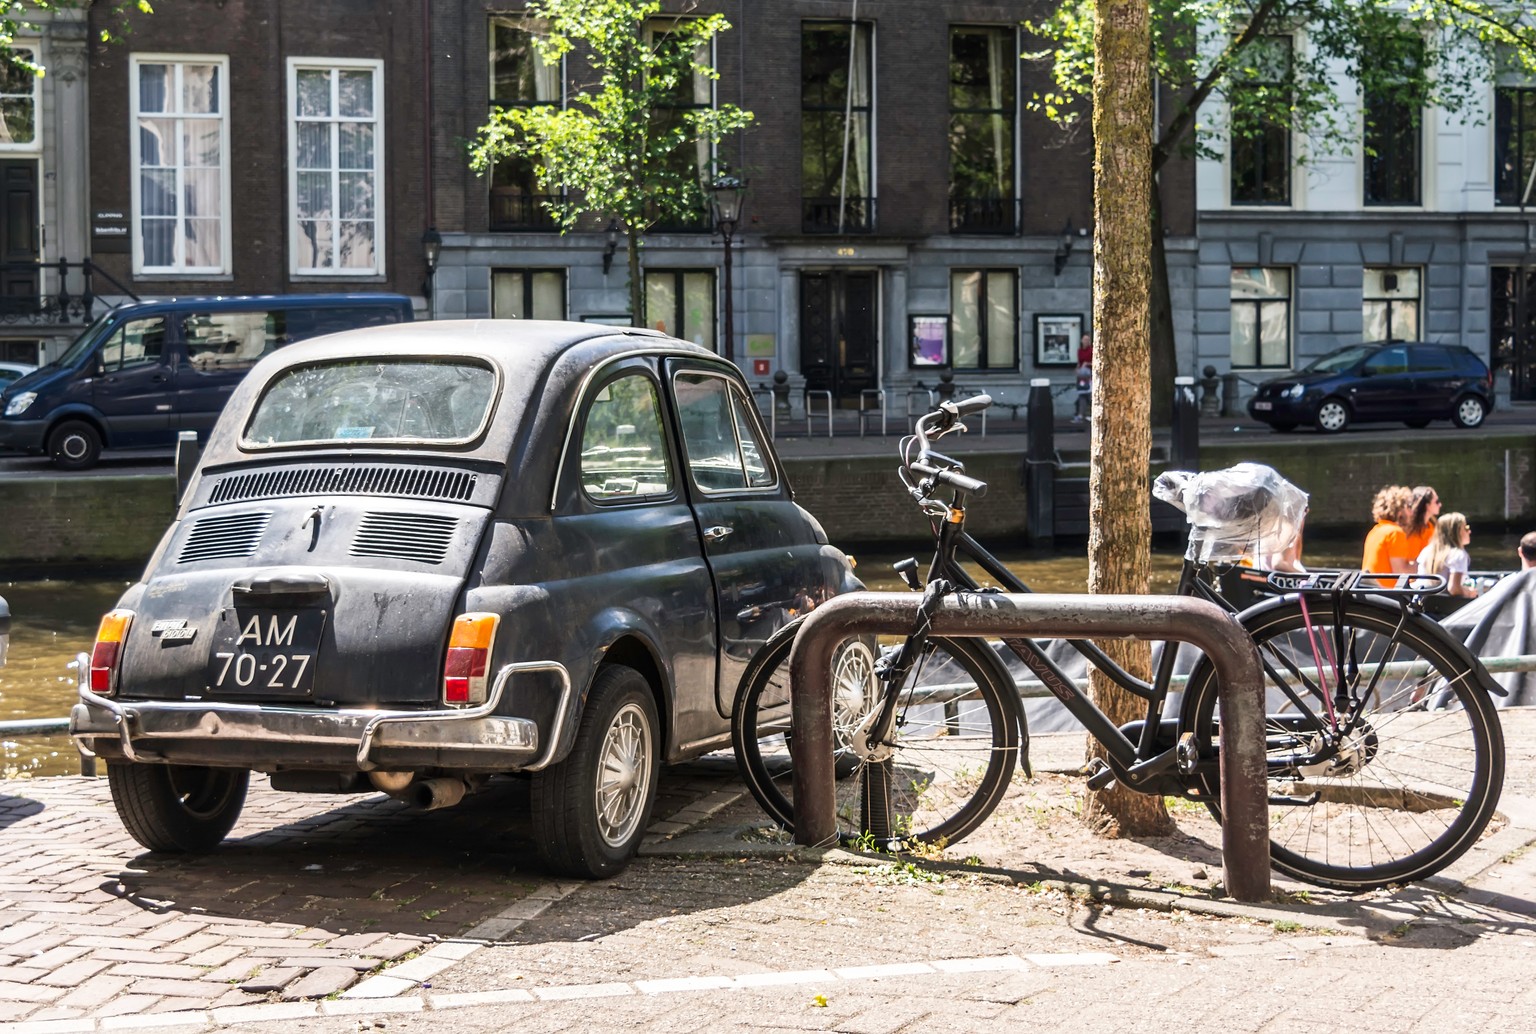 Dafür darf man dann beispielsweise in diesem hübschen Fiat den Kanälen von Amsterdam entlang fahren.